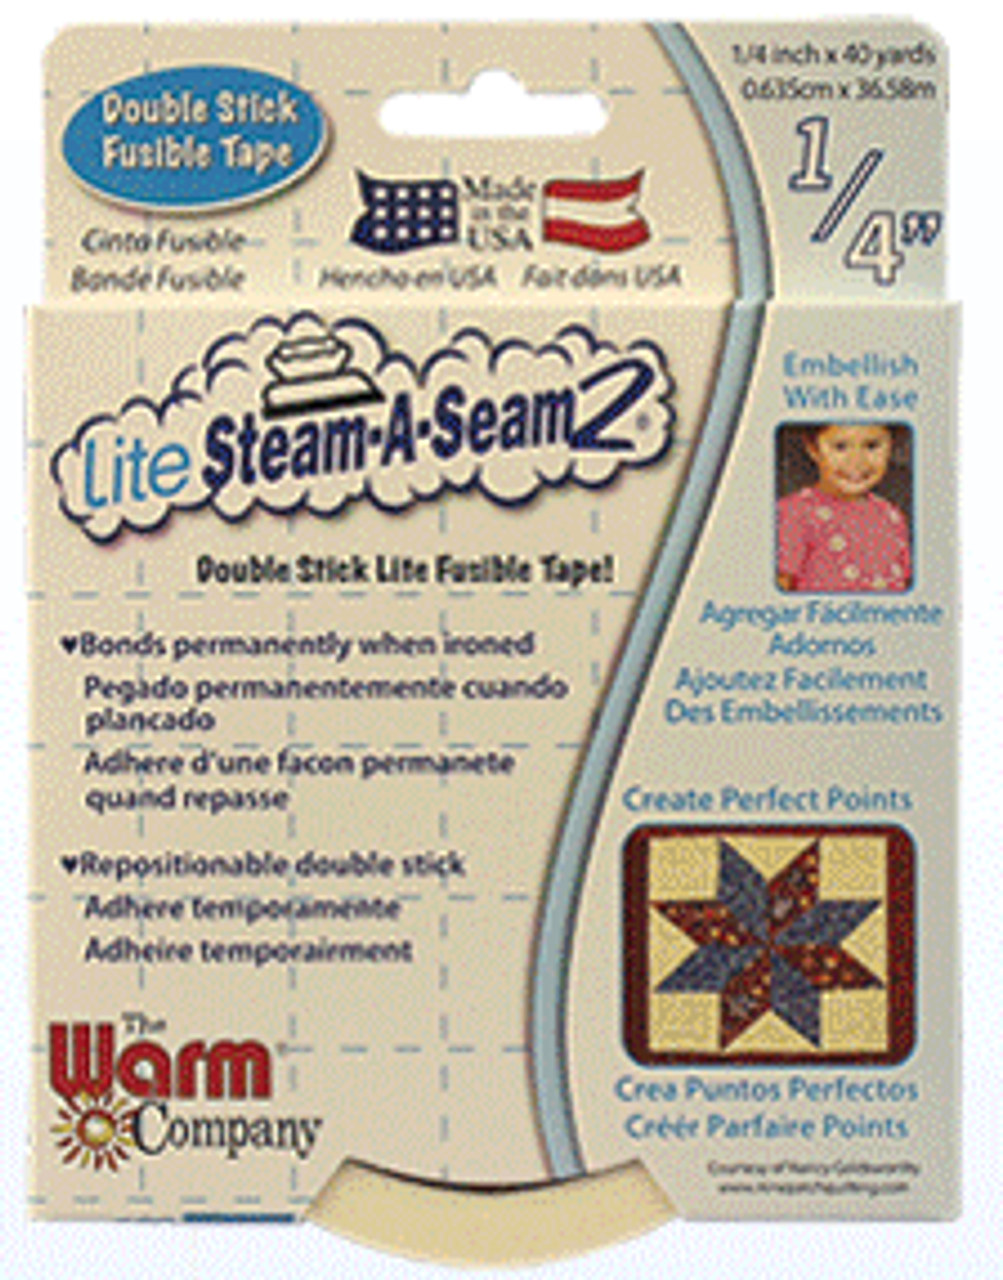 Lite Steam-A-Seam 2 Double Stick